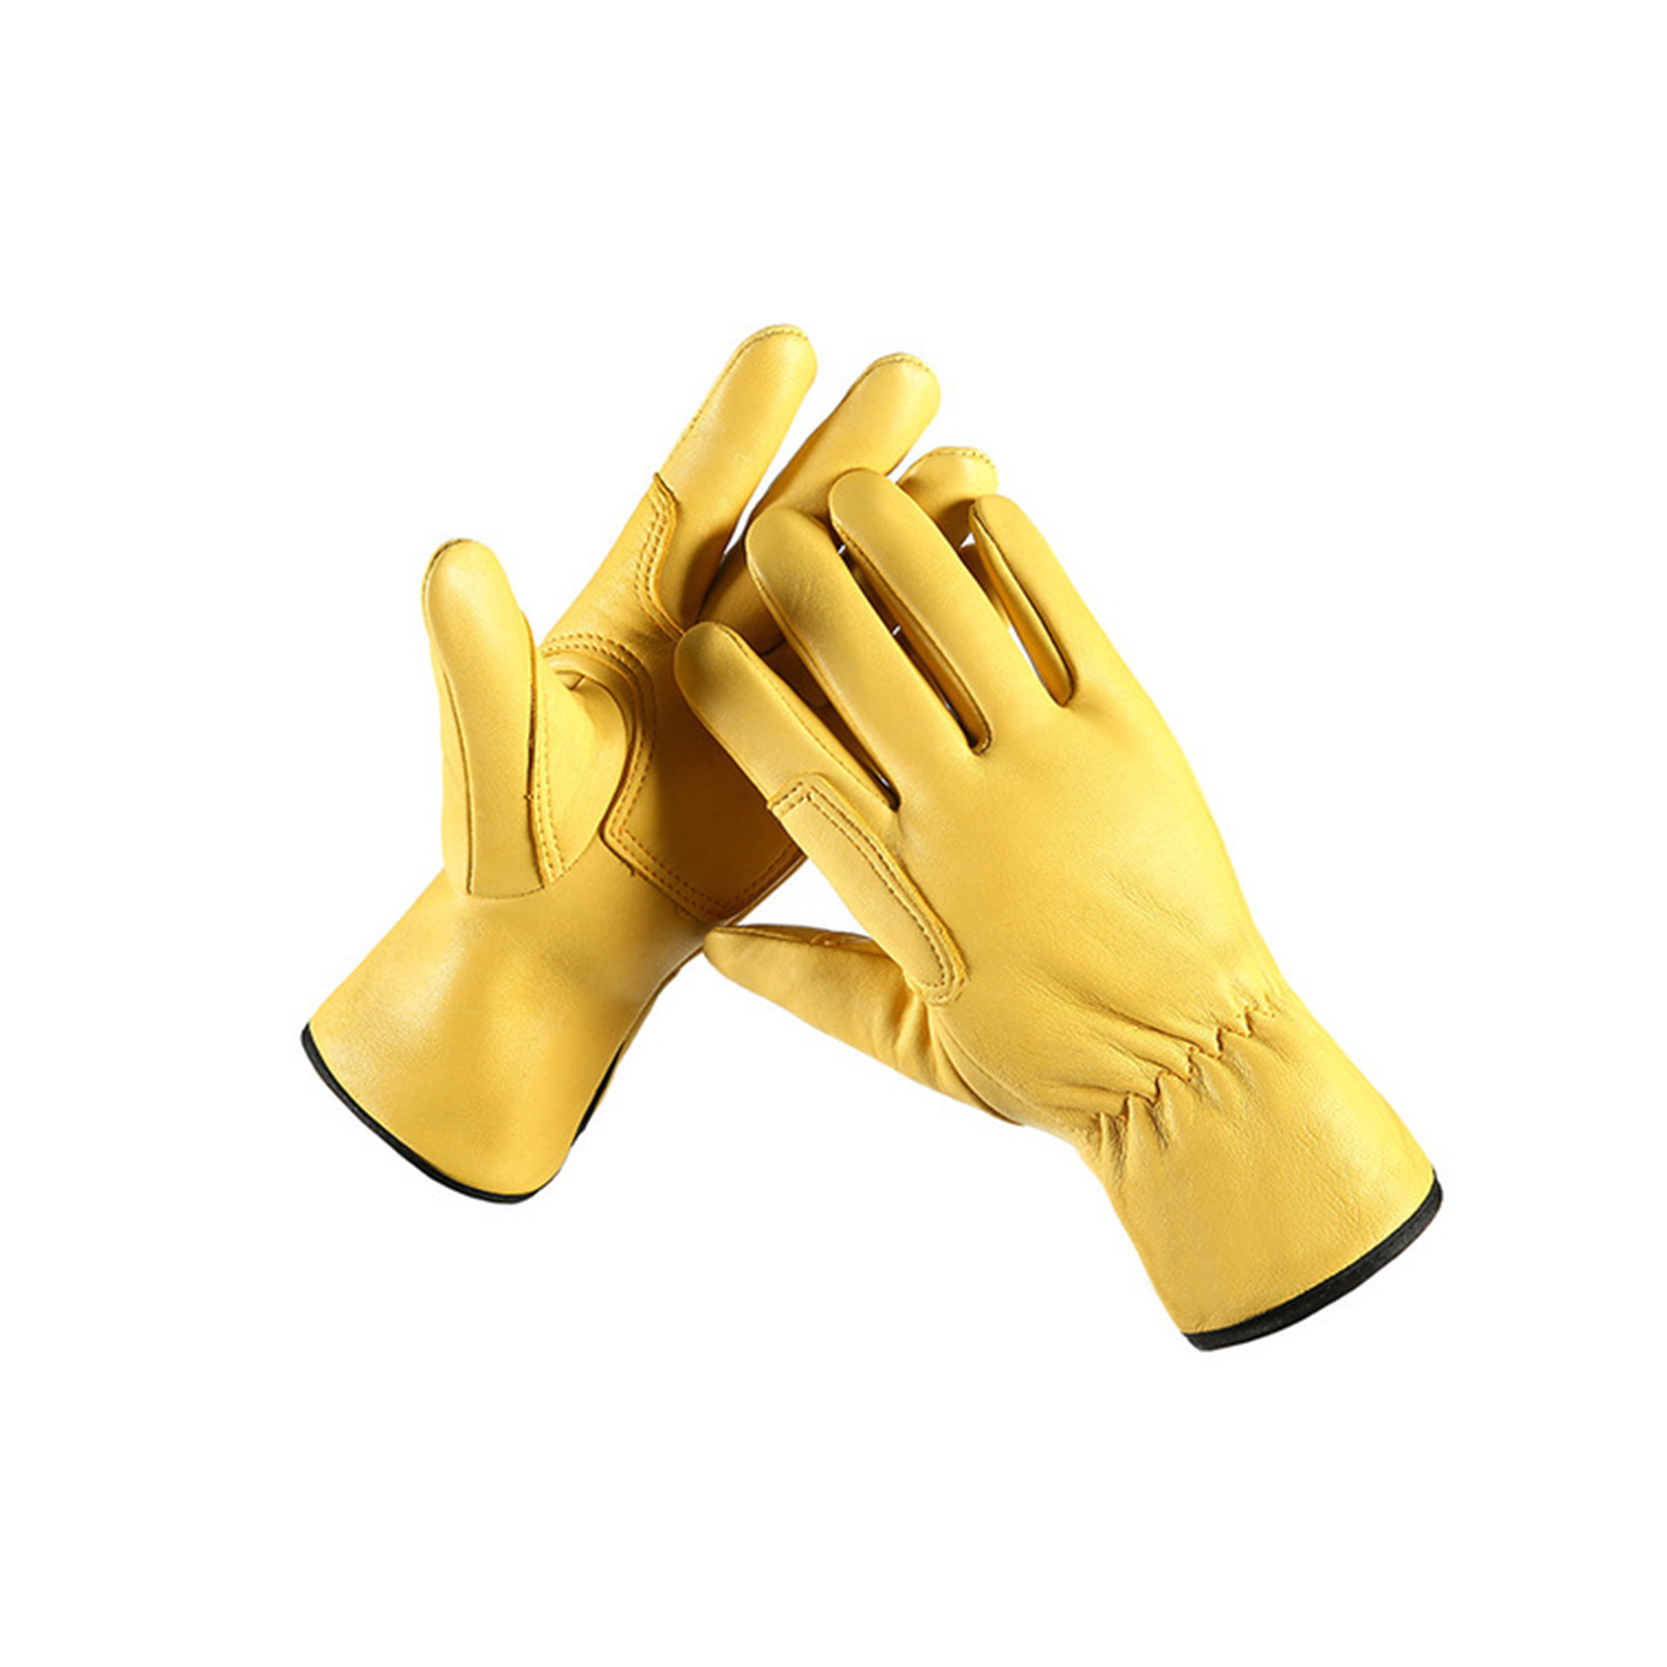 Unlined hominum Cowhide Leather Opus Gloves, Coegi Gloves